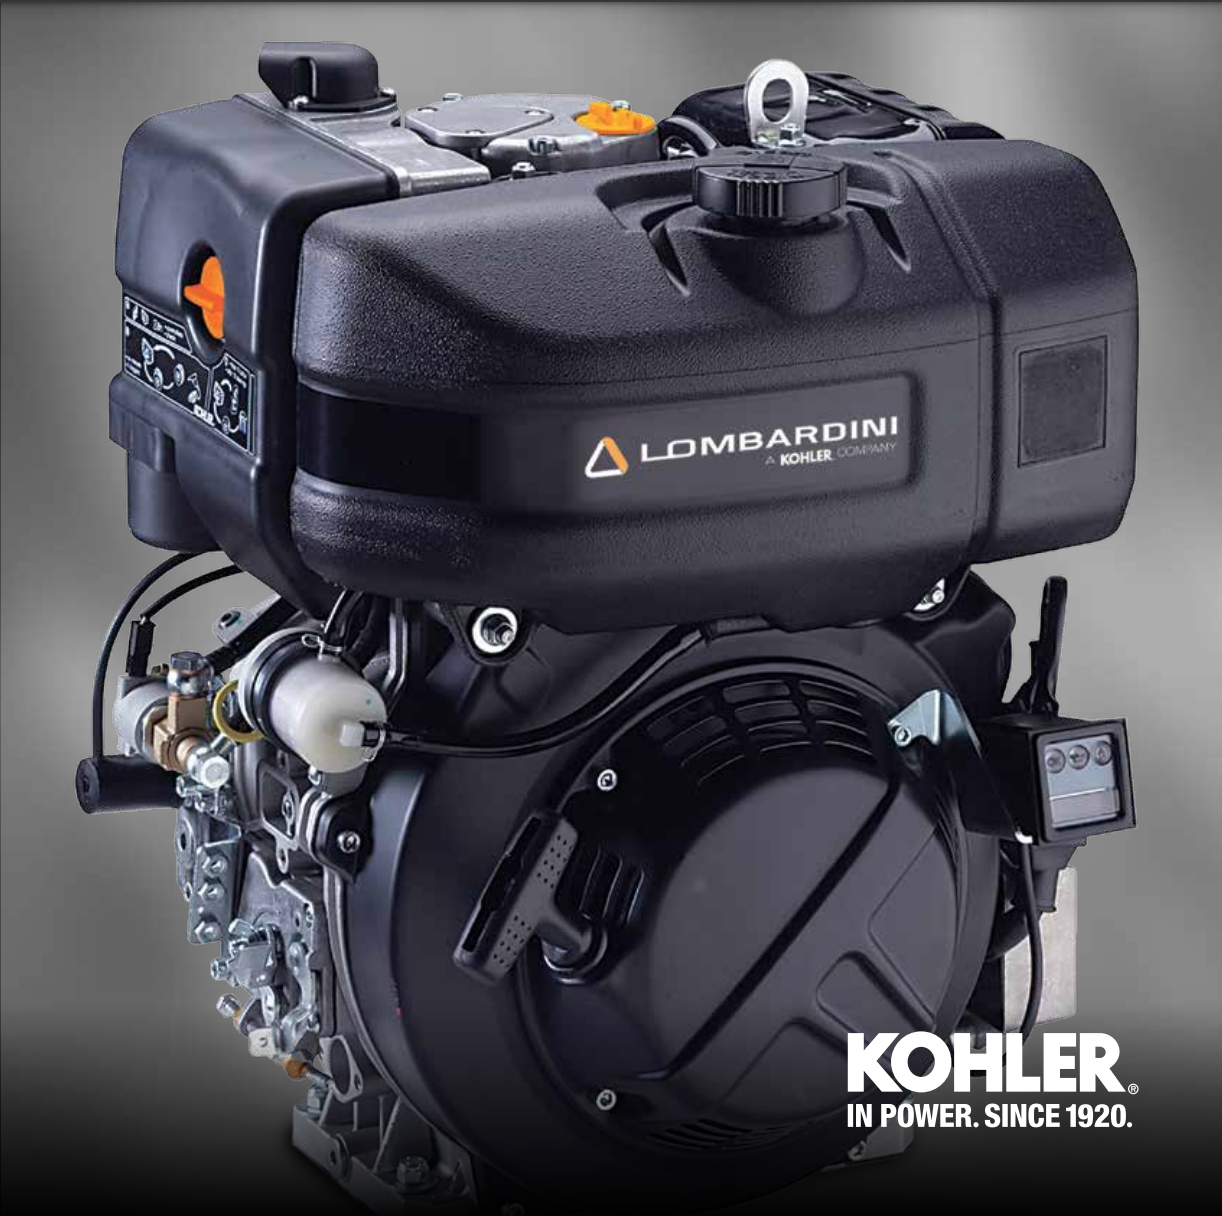 Kohler Lombardini Diesel Engine